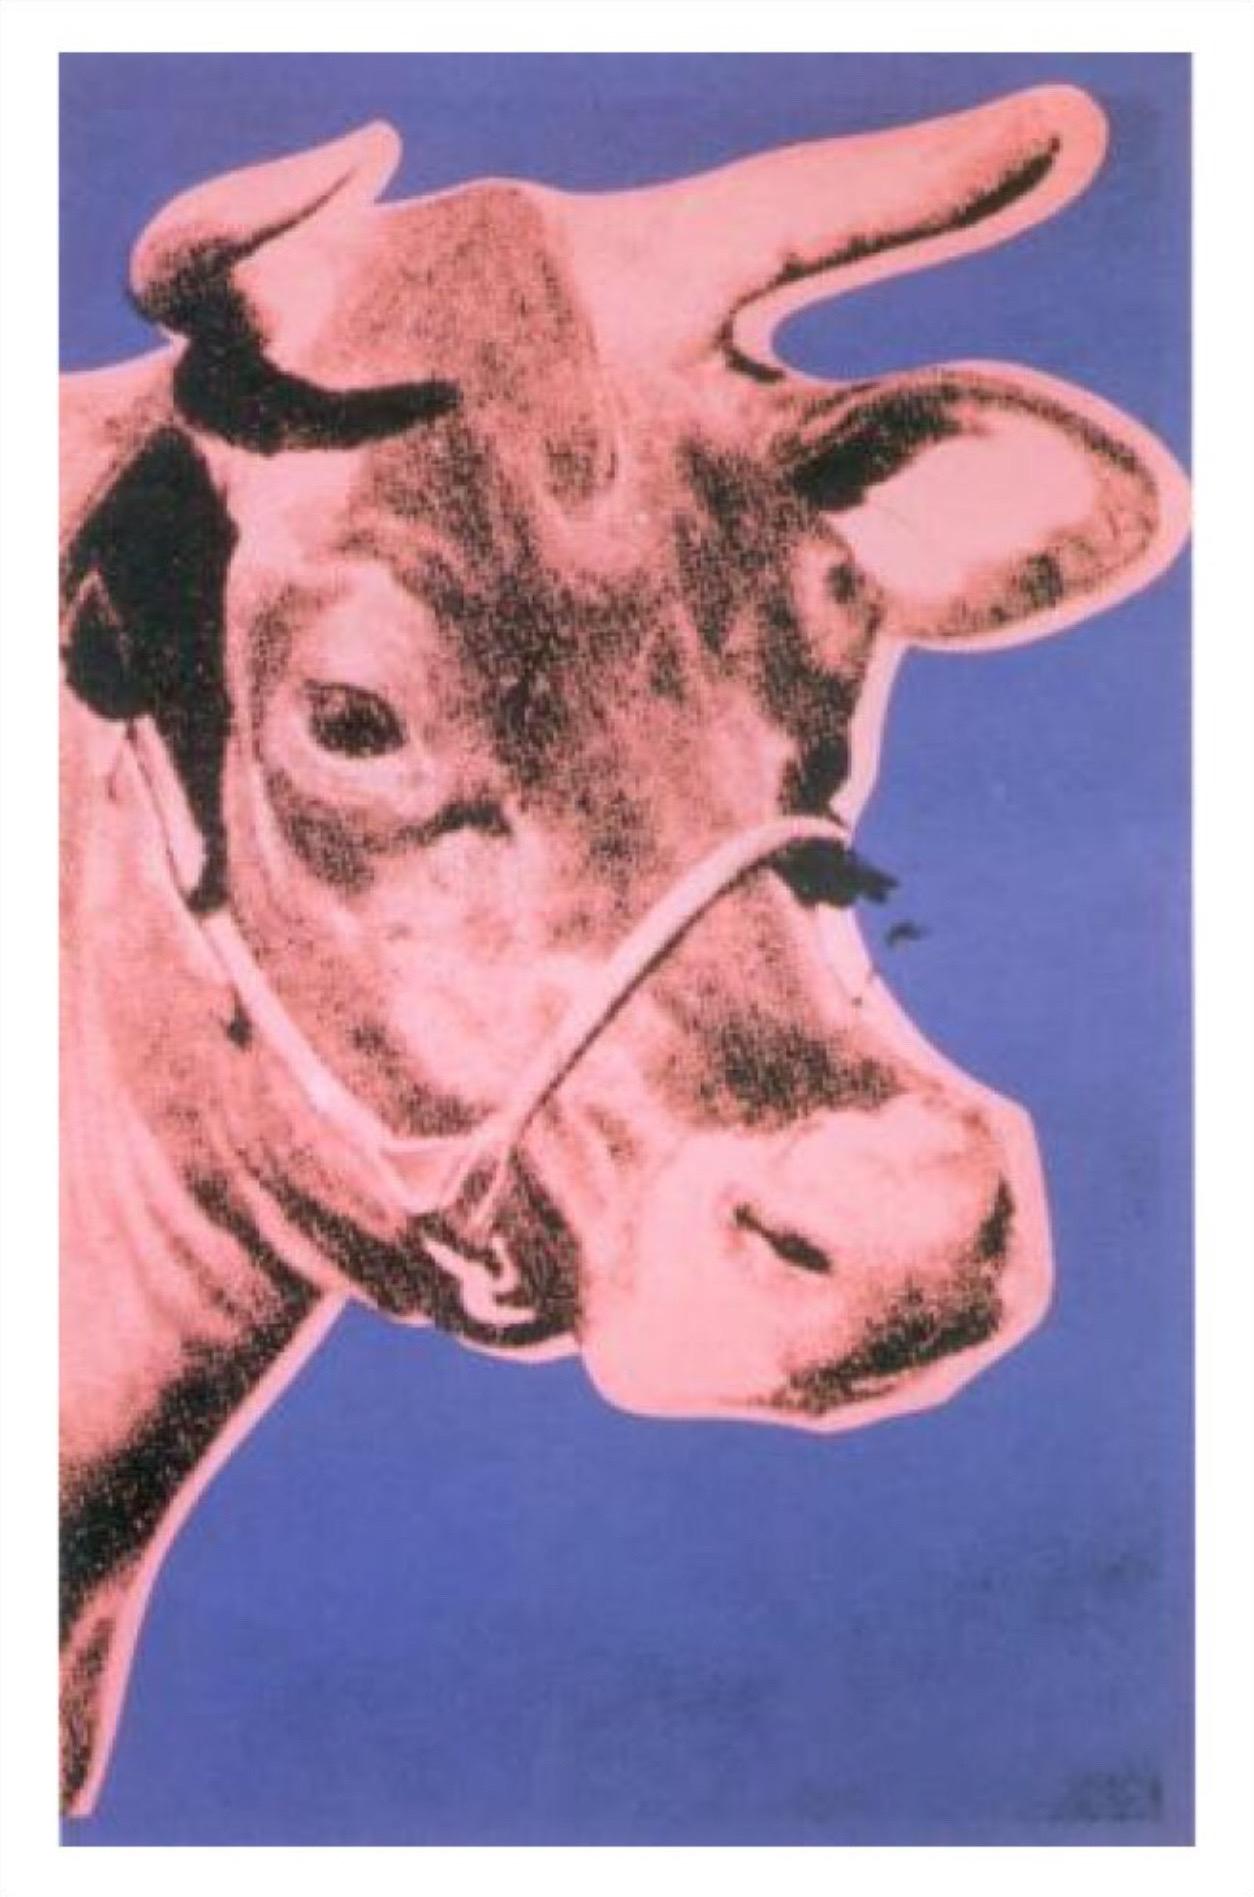 Andy Warhol, Kuh, 1976 (rosa und lila)

Mattes 250 g/m² konserviertes Digitalpapier

Bildgröße: 91 x 142 cm (35,82 x 55,90 Zoll)
Papierformat: 100 x 150 cm (39,37 x 59,05 Zoll) 

In einer Ausstellung in der Galerie Leo Castelli in New York City im